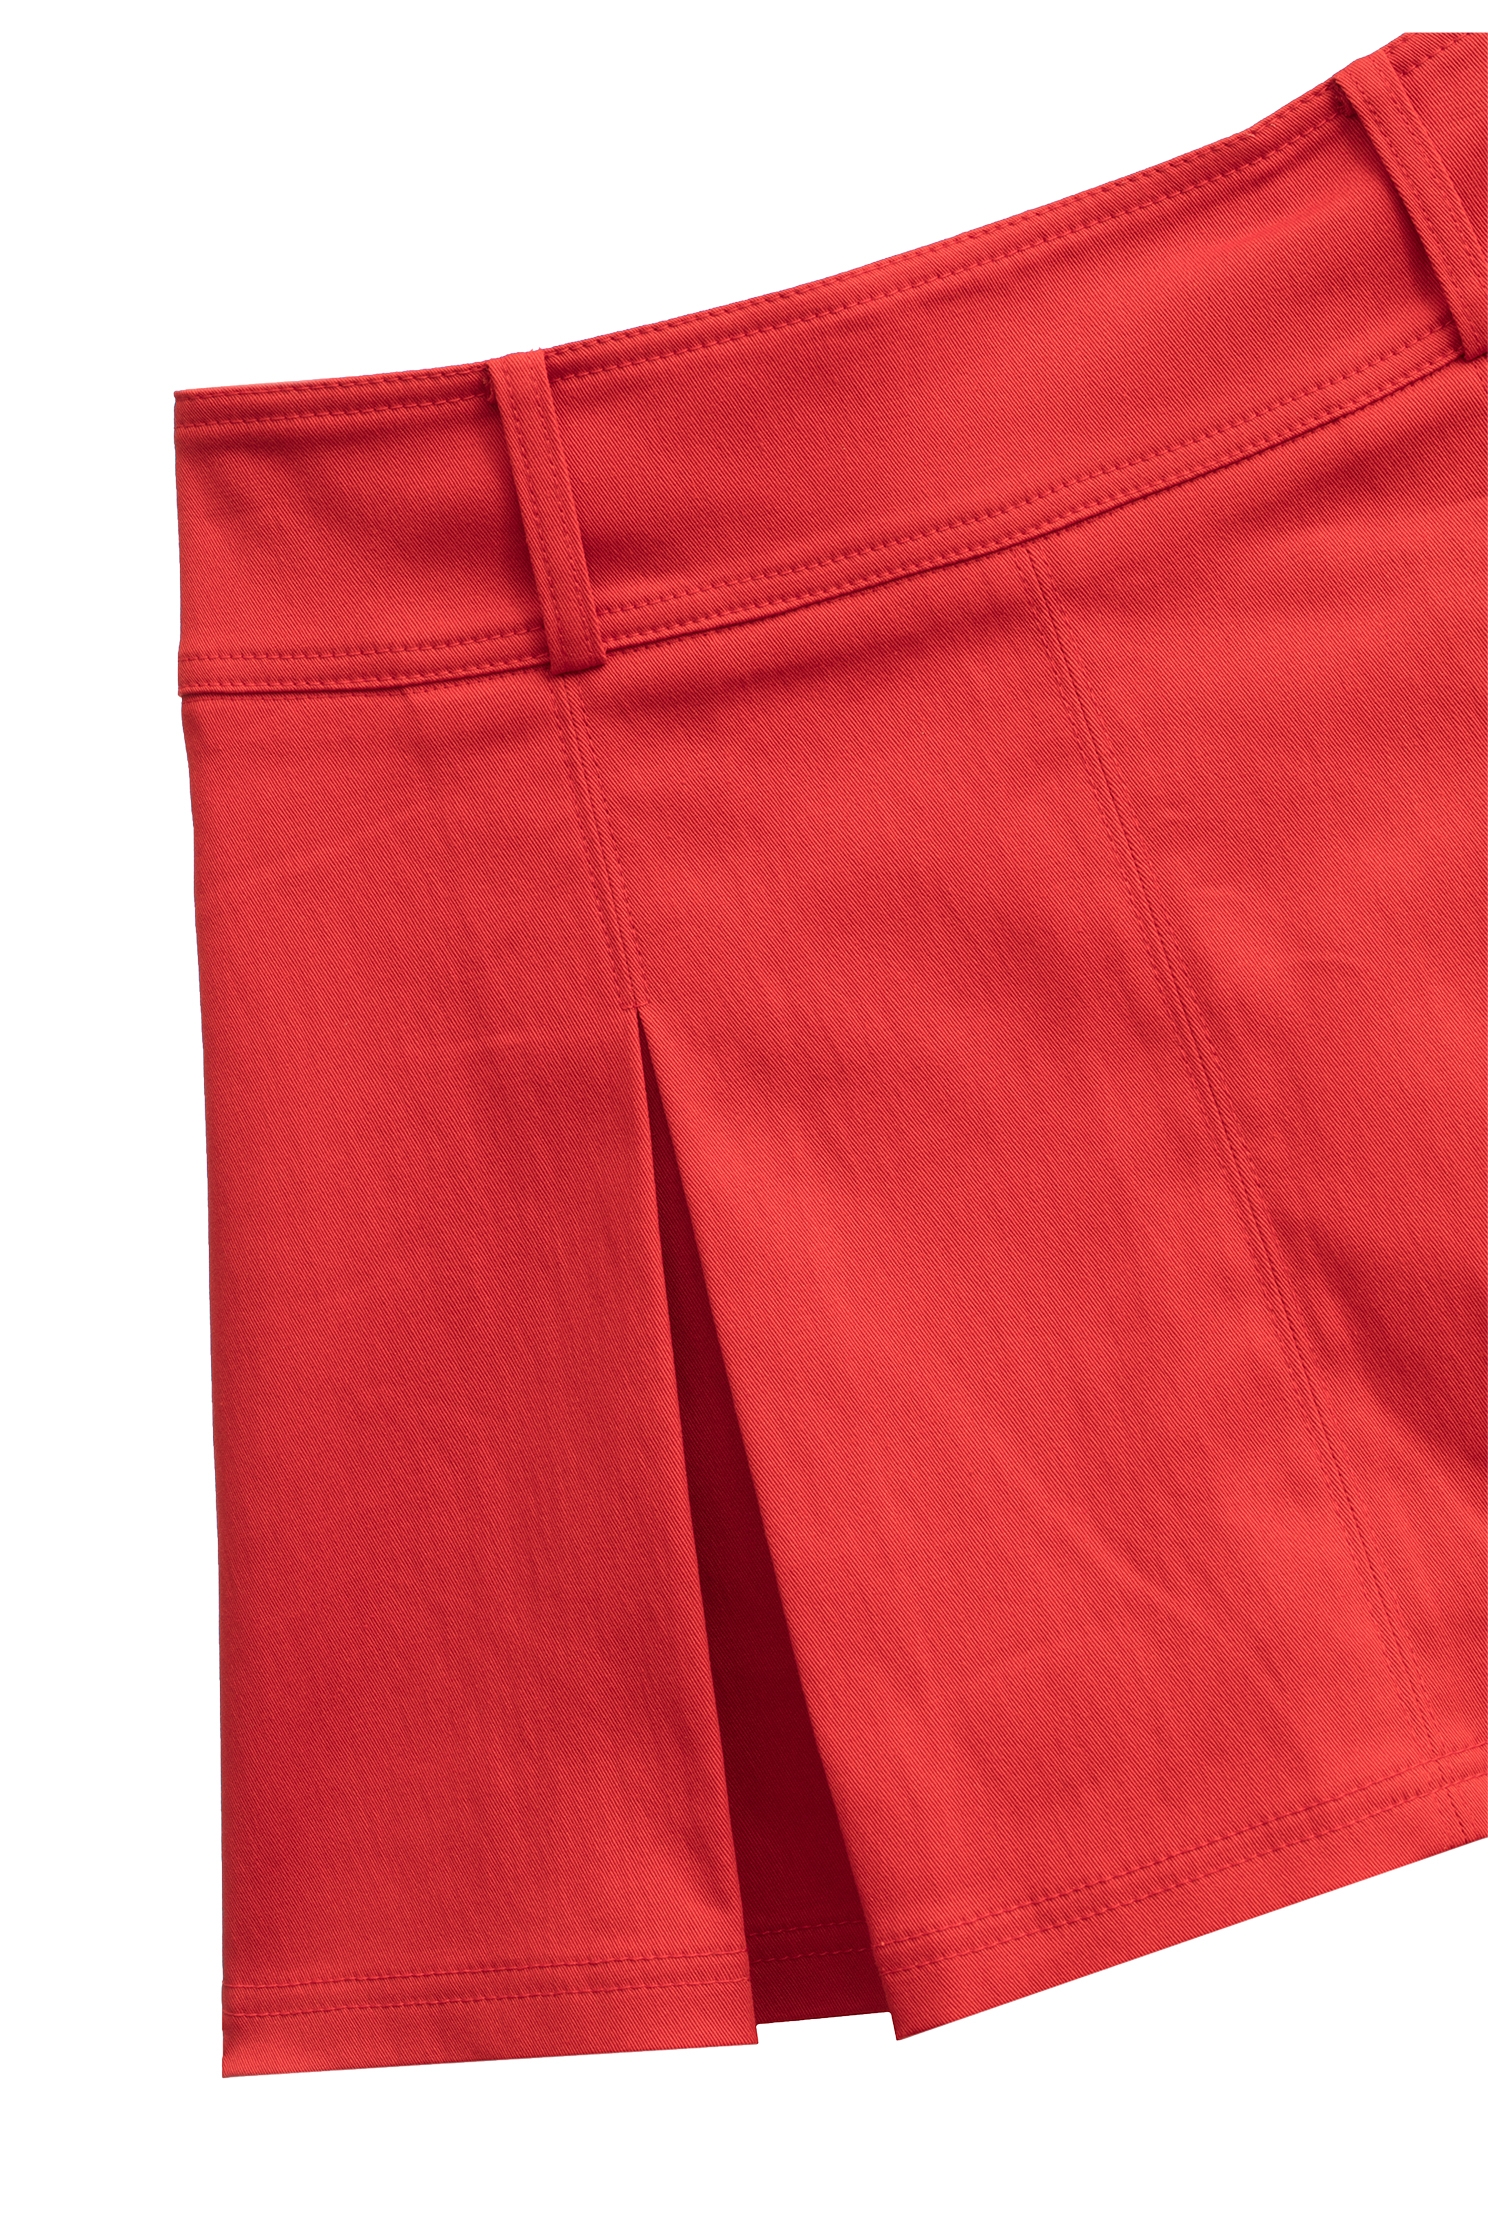 優雅深紅色短裙優雅深紅色短裙,人氣商品,春夏穿搭,短裙,短褲